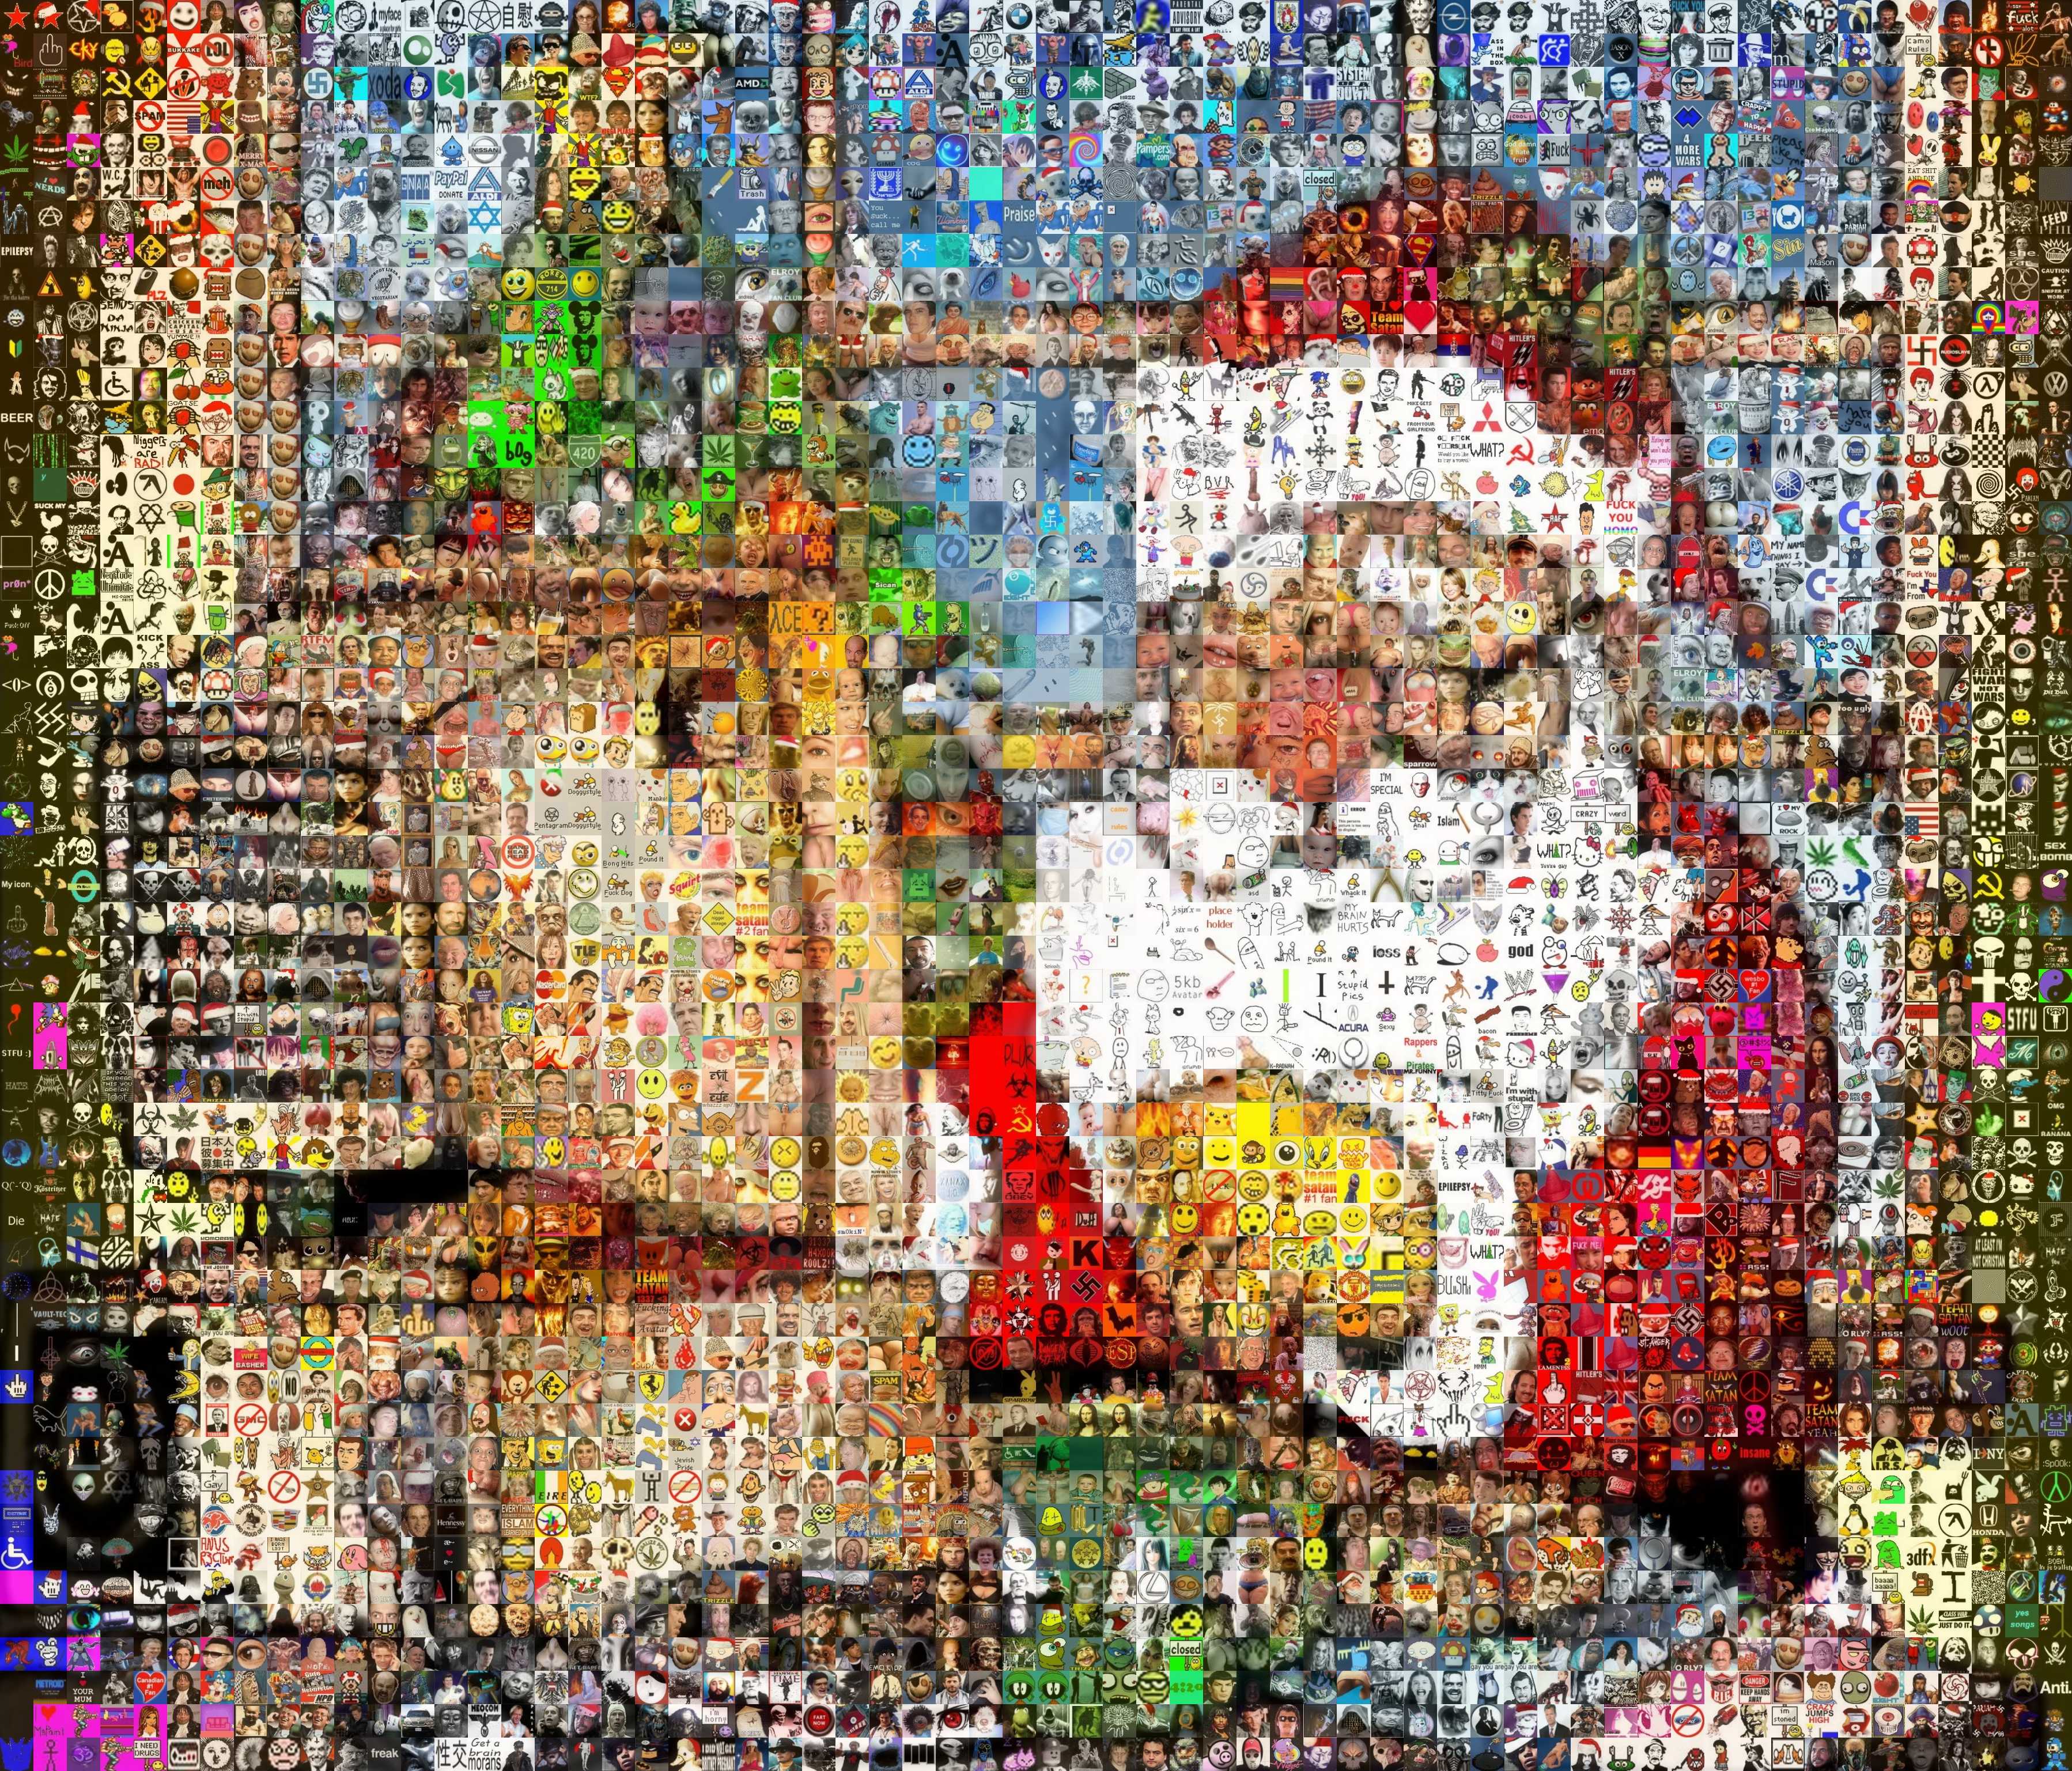 2009/11/b0g-mosaic-xmas